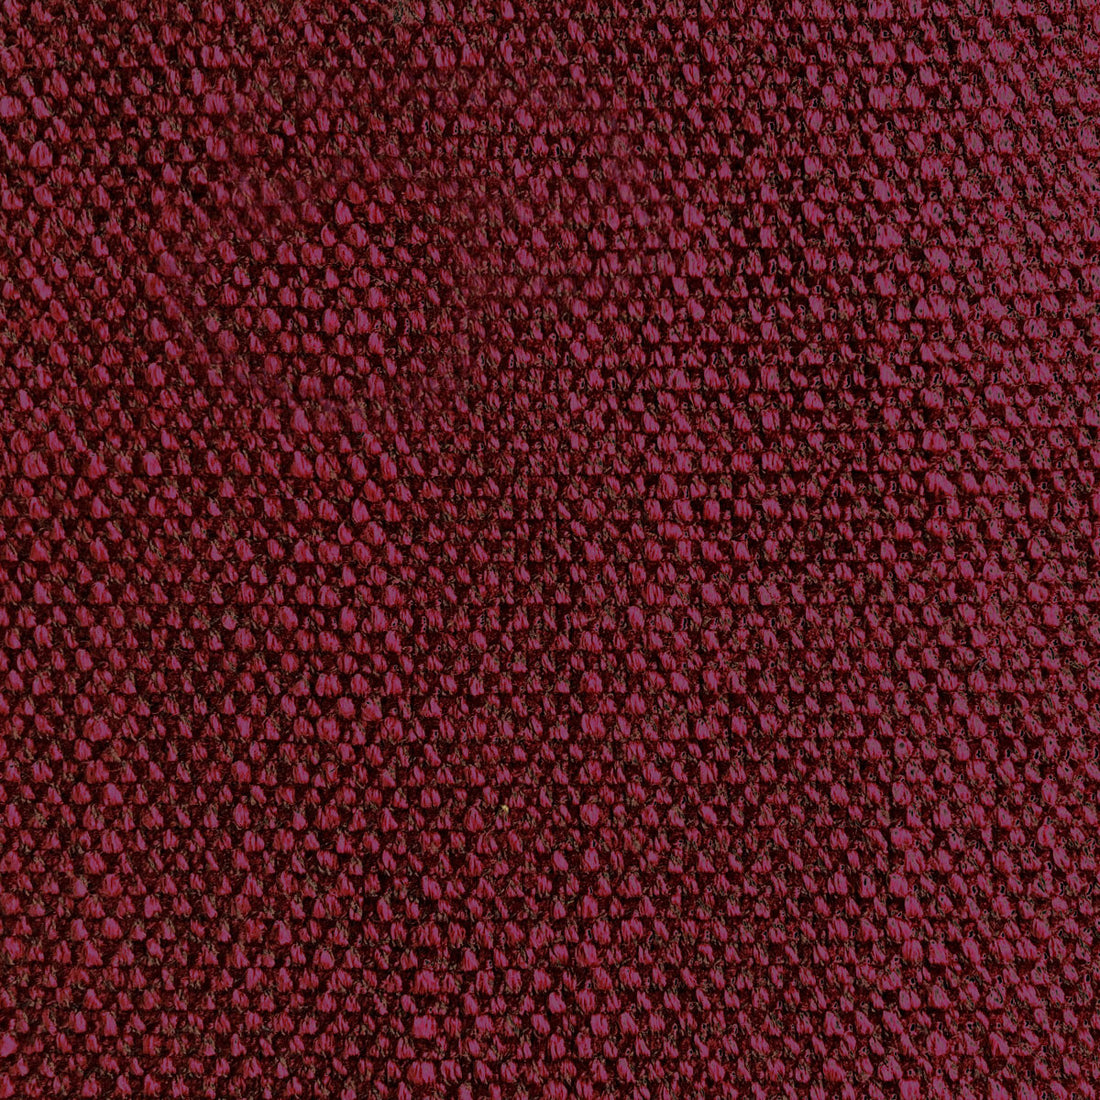 Hugo fabric in cereza color - pattern LCT1053.007.0 - by Gaston y Daniela in the Lorenzo Castillo VI collection